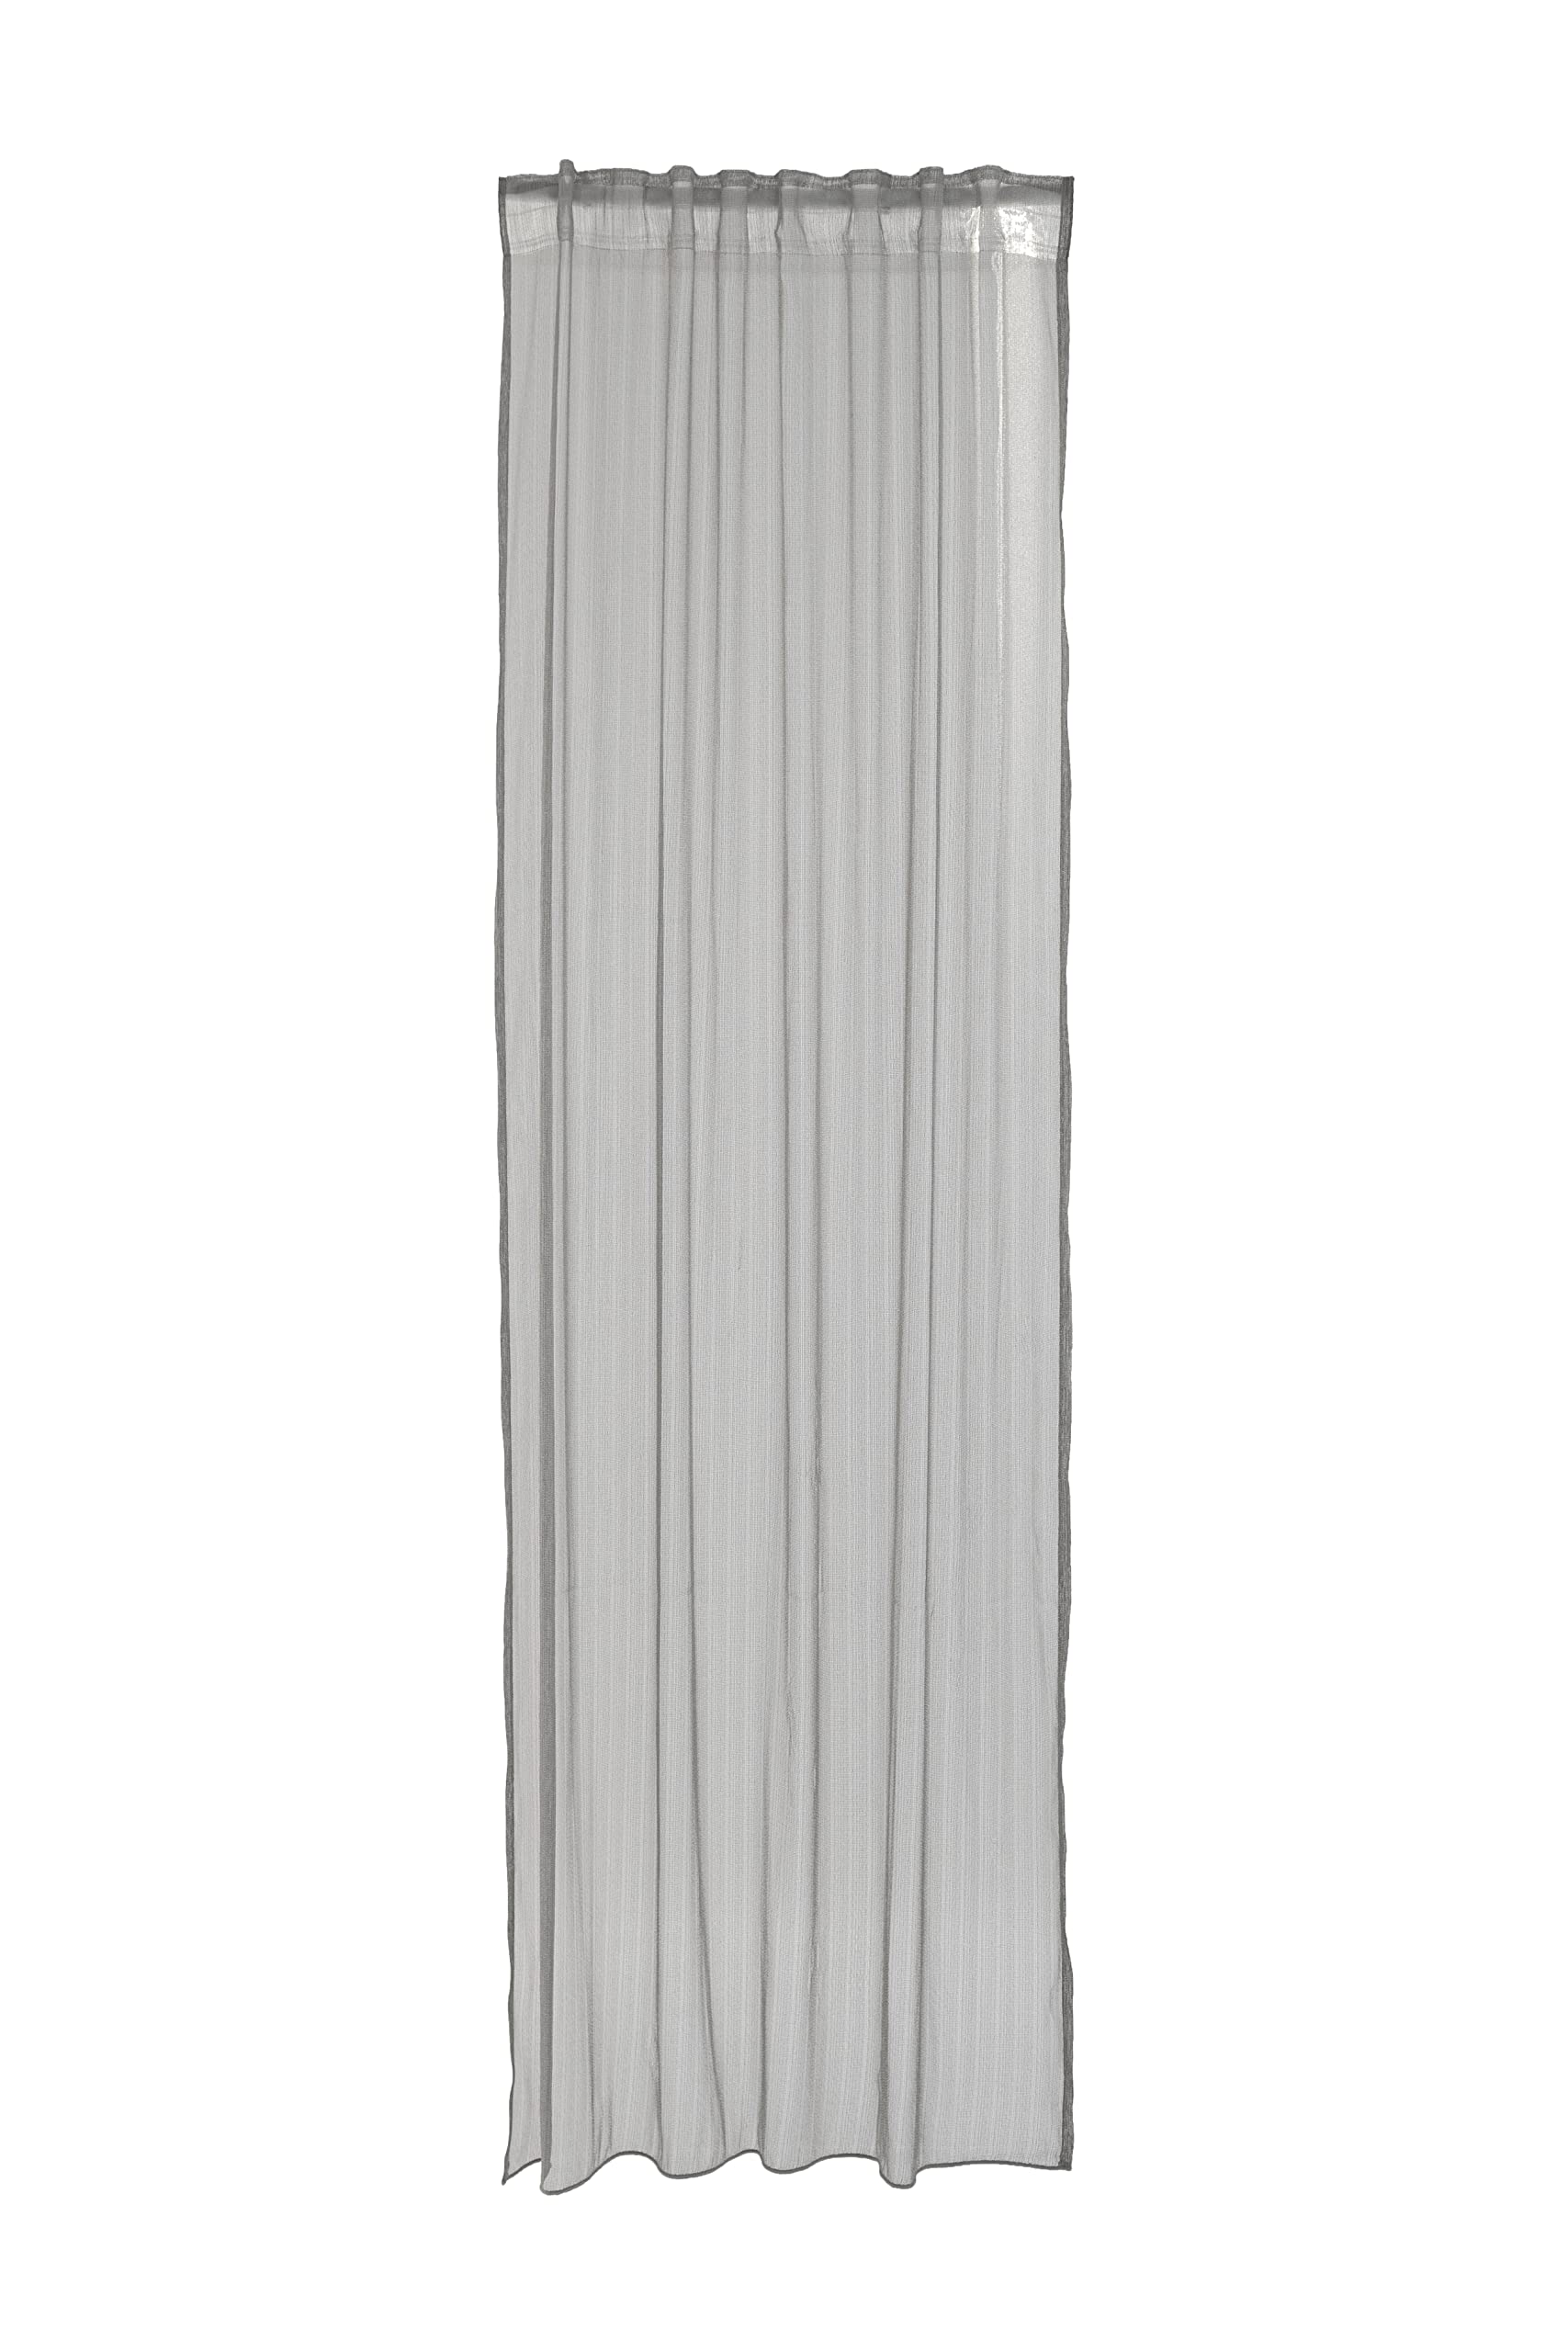 Homing halbtransparenter Vorhang Silber(1 Stück) | gestreift modern | Wohnzimmer Schlafzimmer Kinderzimmer | 140x245cm(BxH)